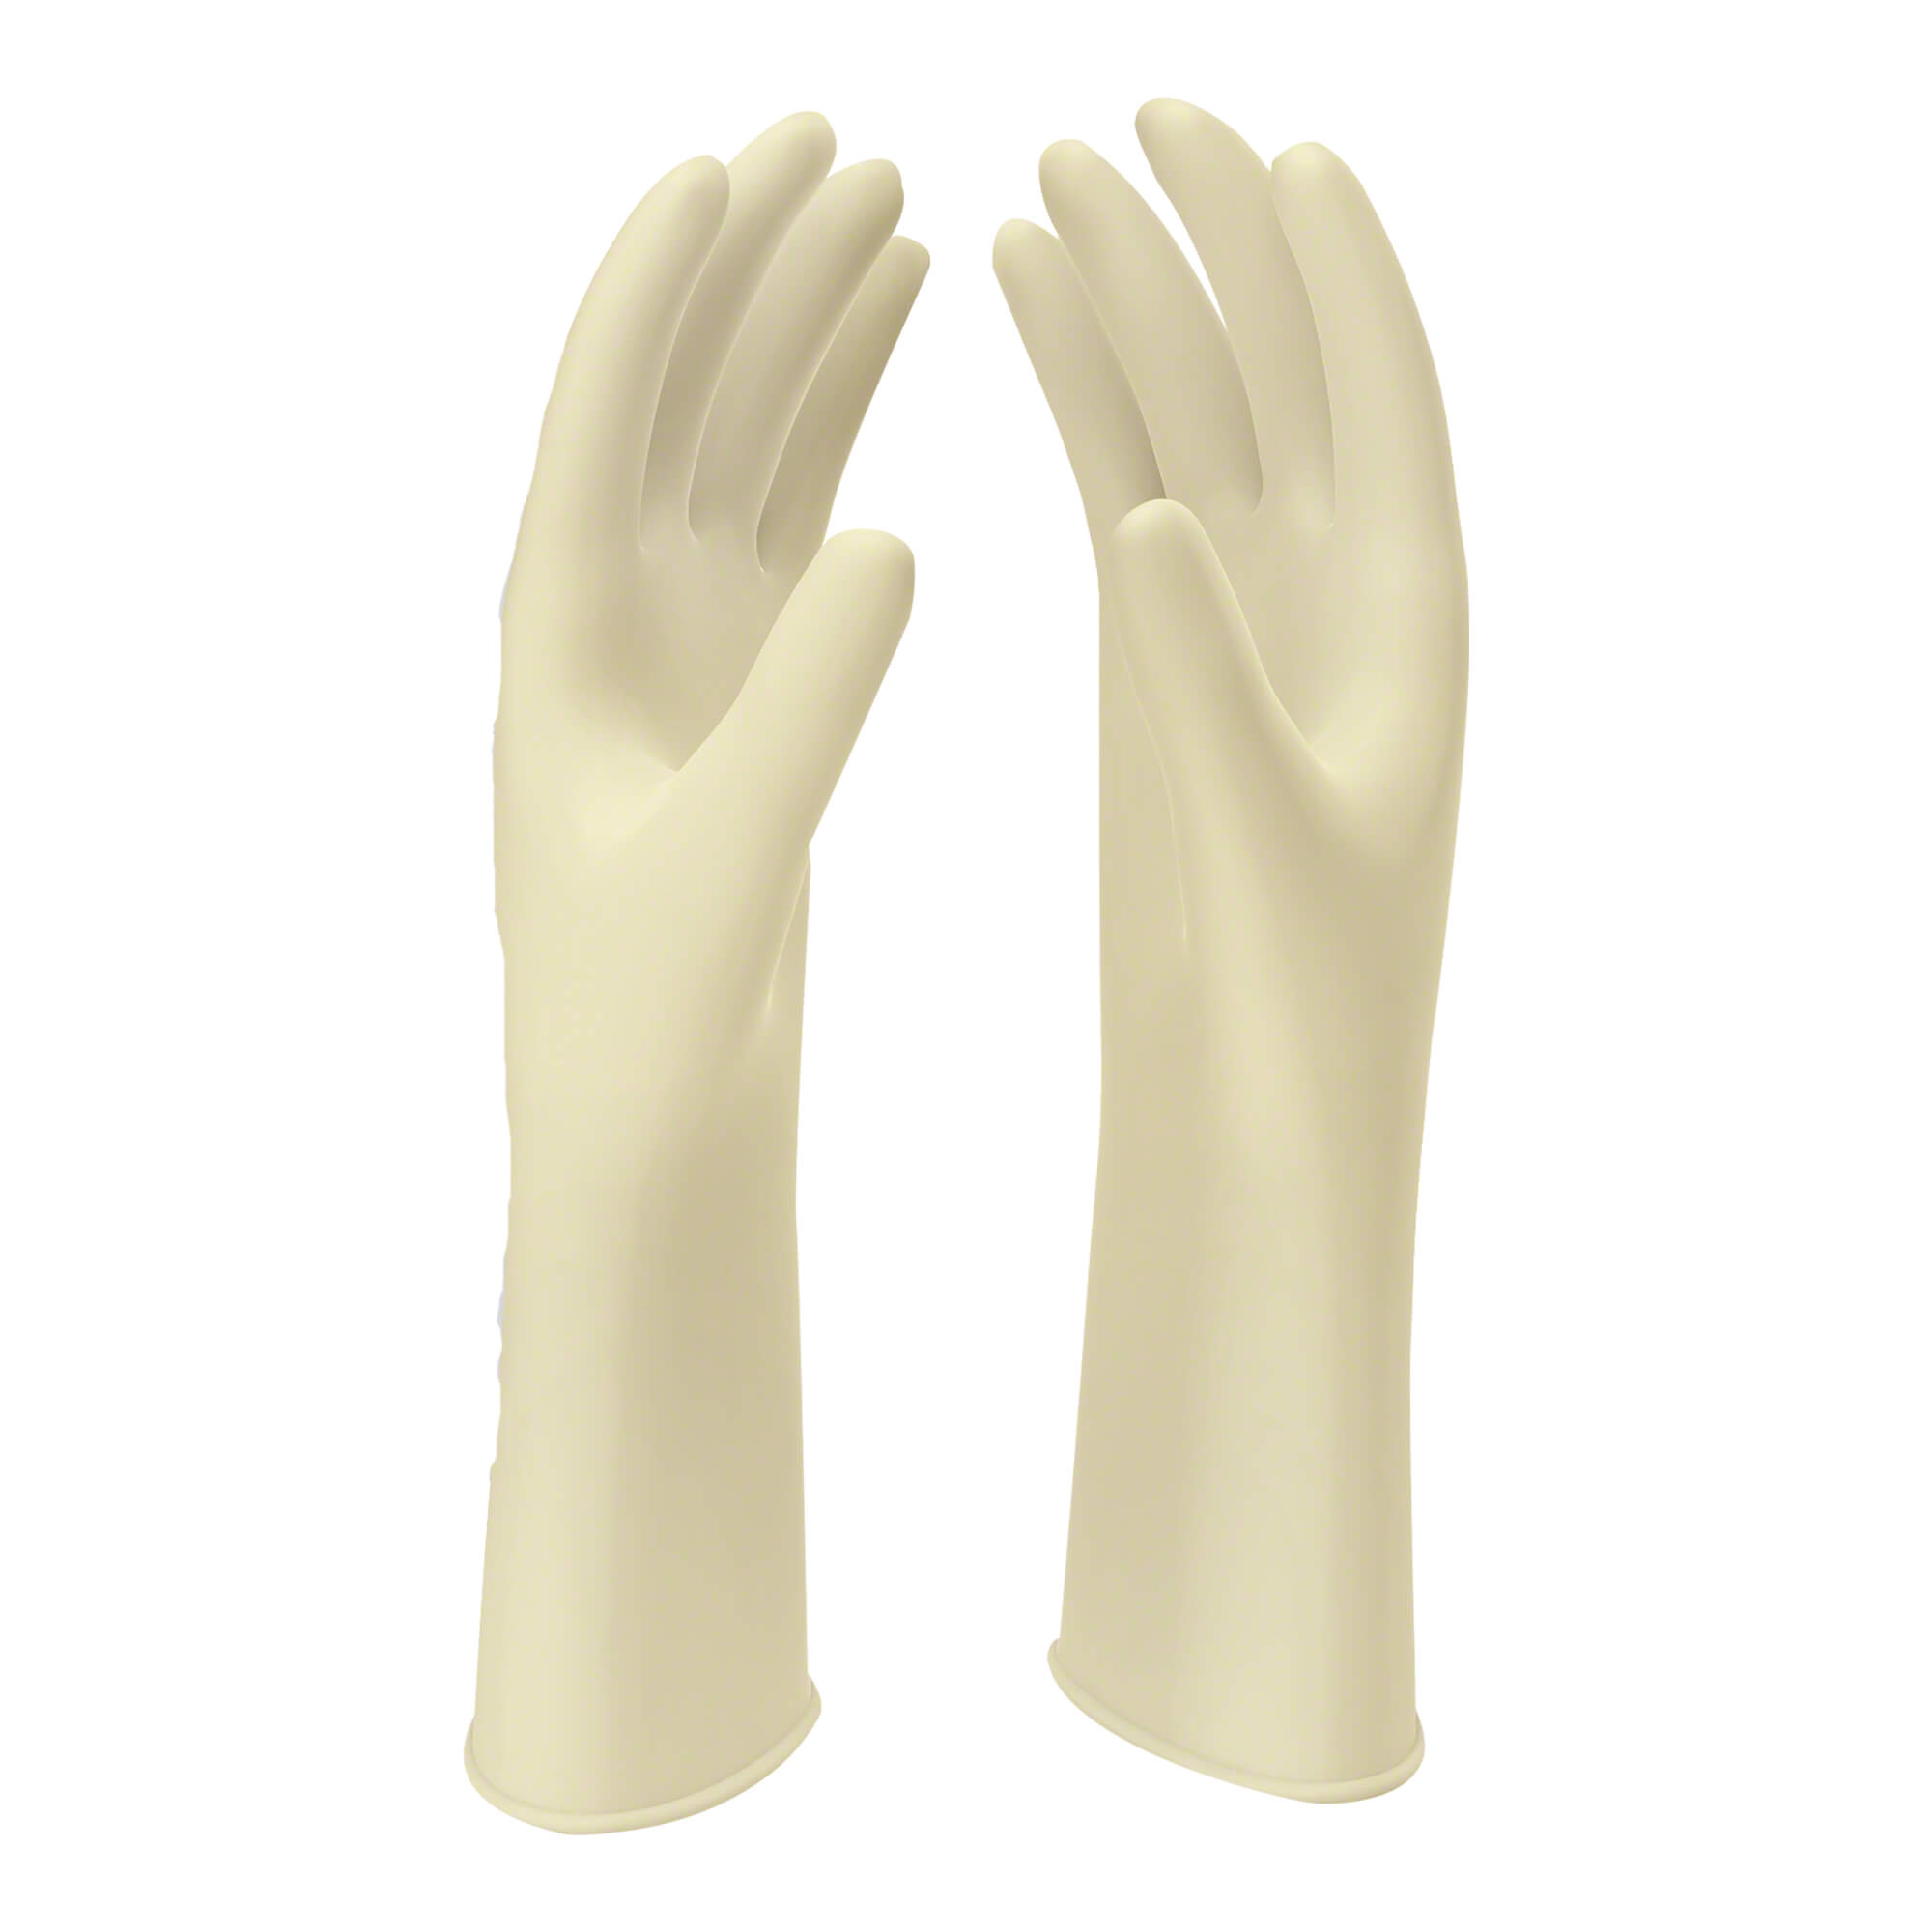 Naturweiße Latex OP-Handschuhe. Größe 6.